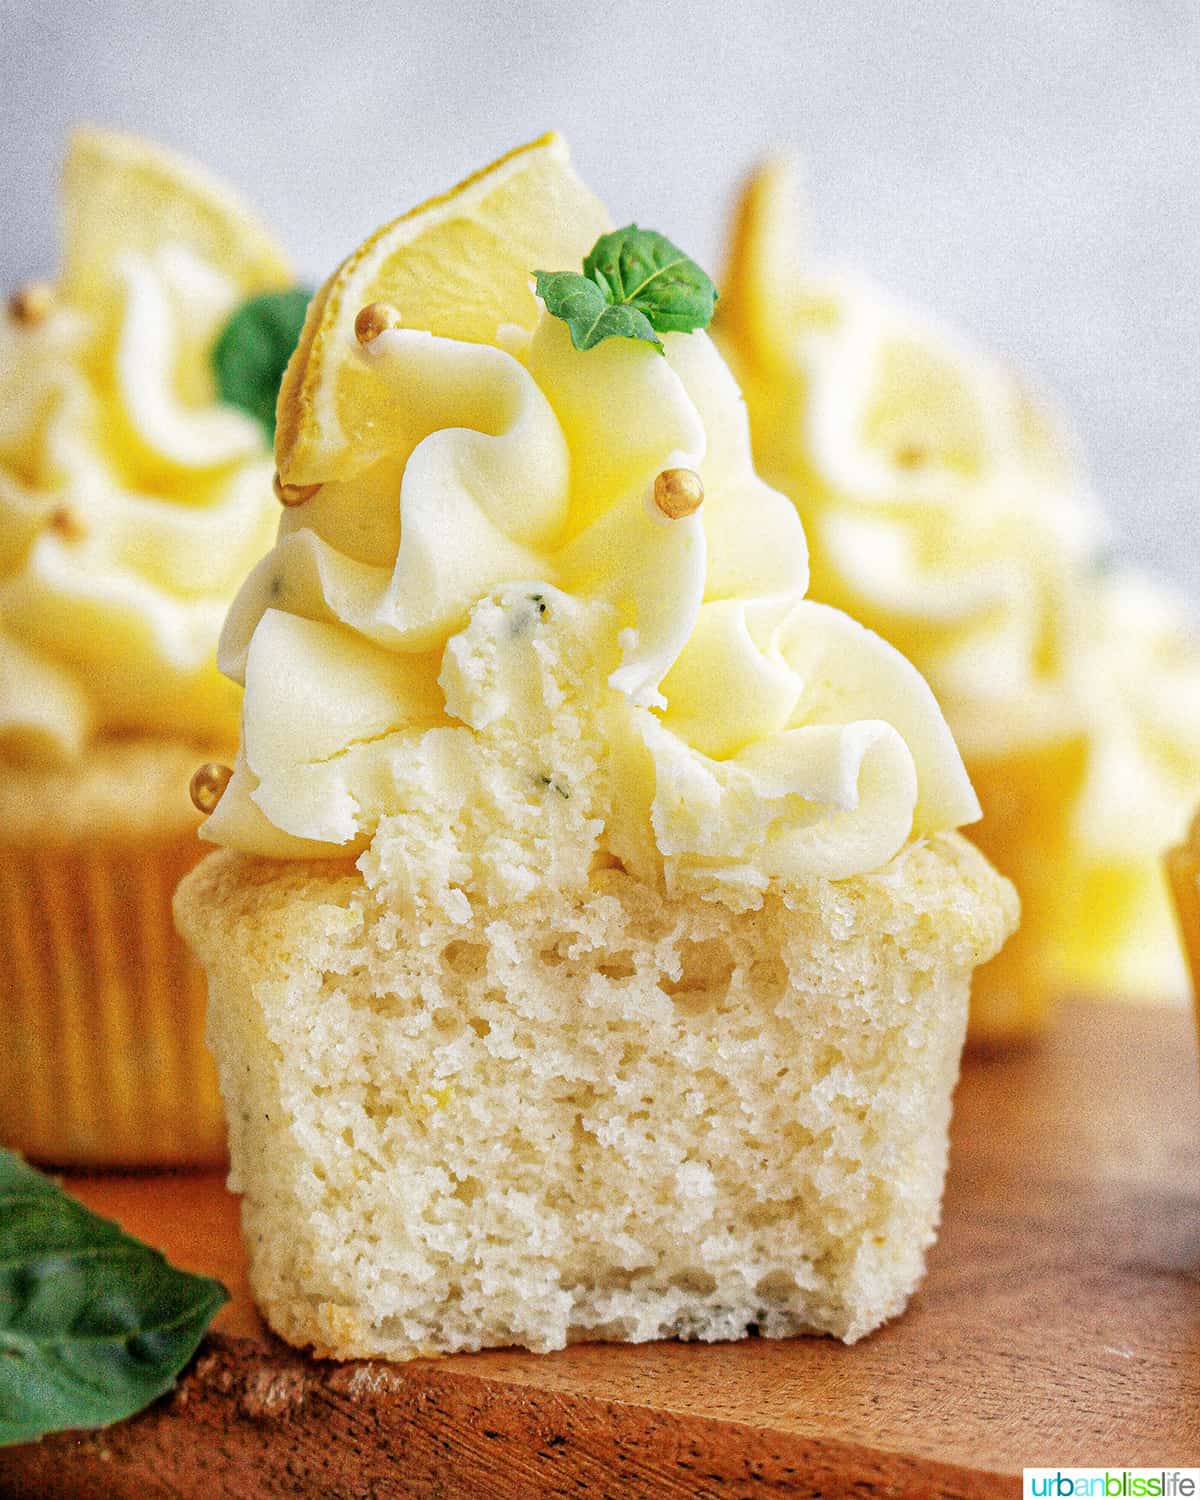 lemon basil cupcake sliced in half with lemon buttercream frosting and garnish of basil leaves and lemon slice.